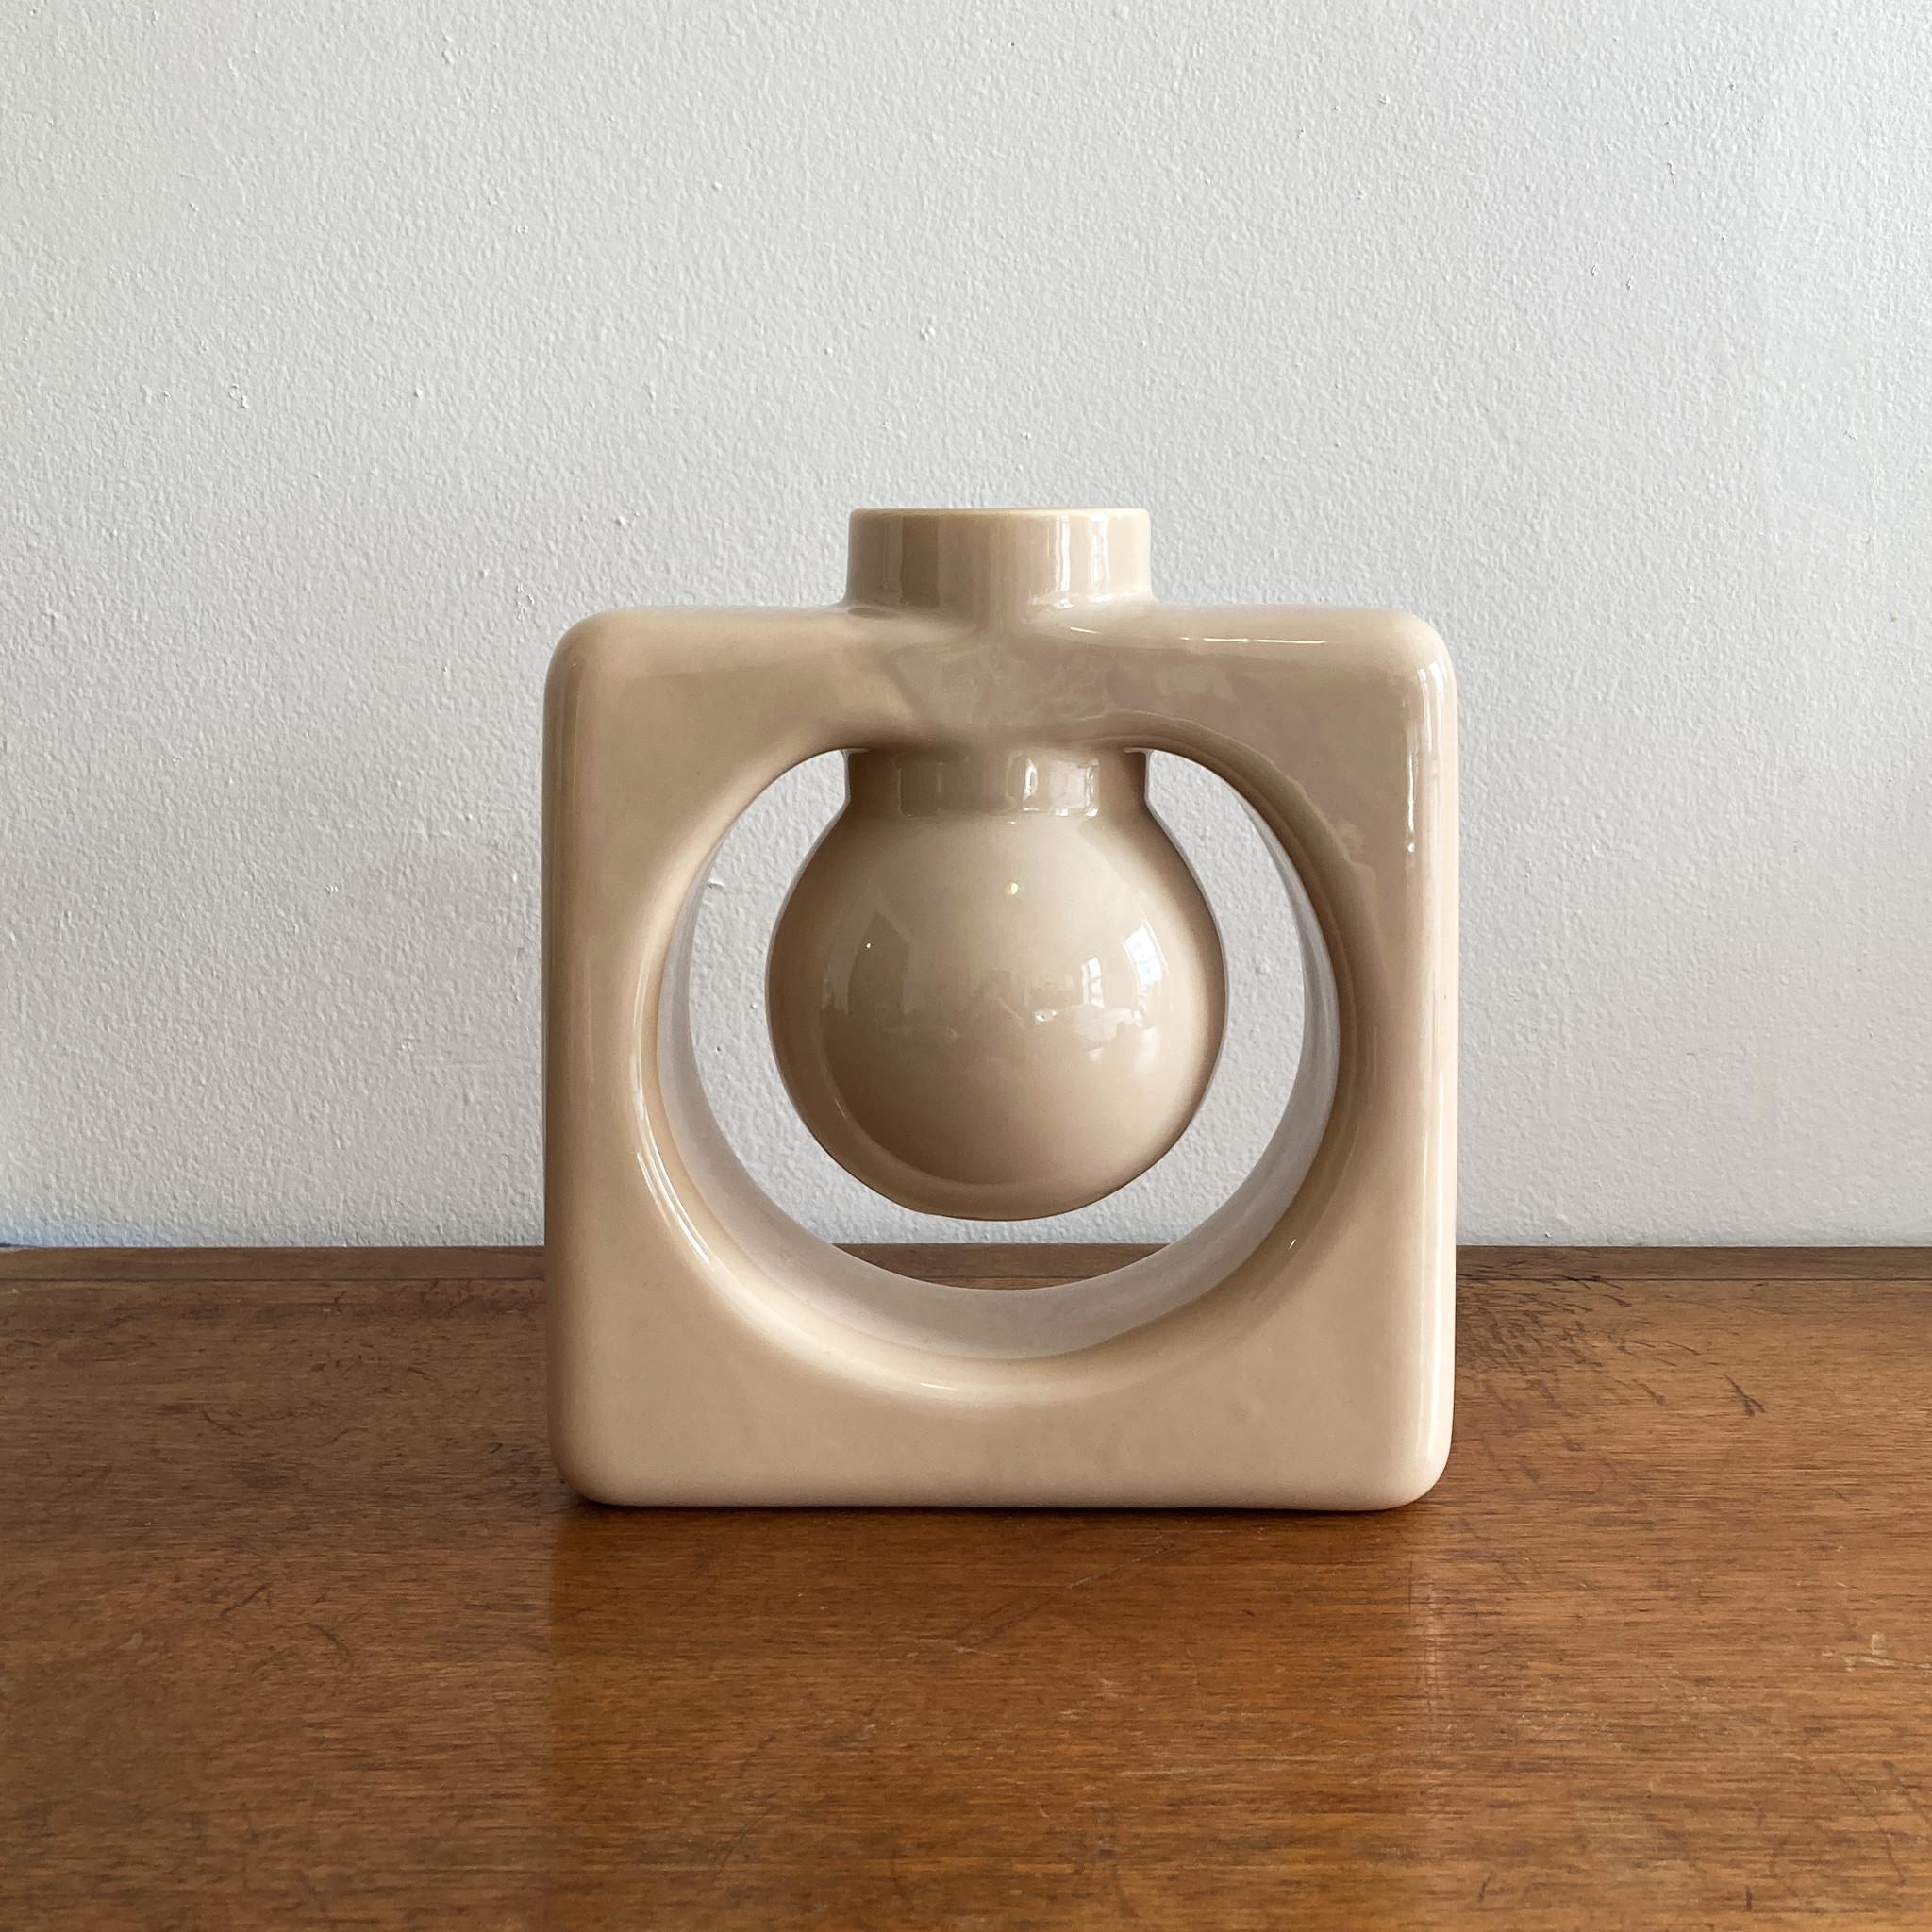 Un superbe vase abstrait Haeger beige/écru de style midcentury, de taille moyenne. En très bon état, pas de craquelures, d'éclats ou de fissures. Cette pièce est coordonnée avec quatre autres vases assortis, listés séparément, voir les photos.